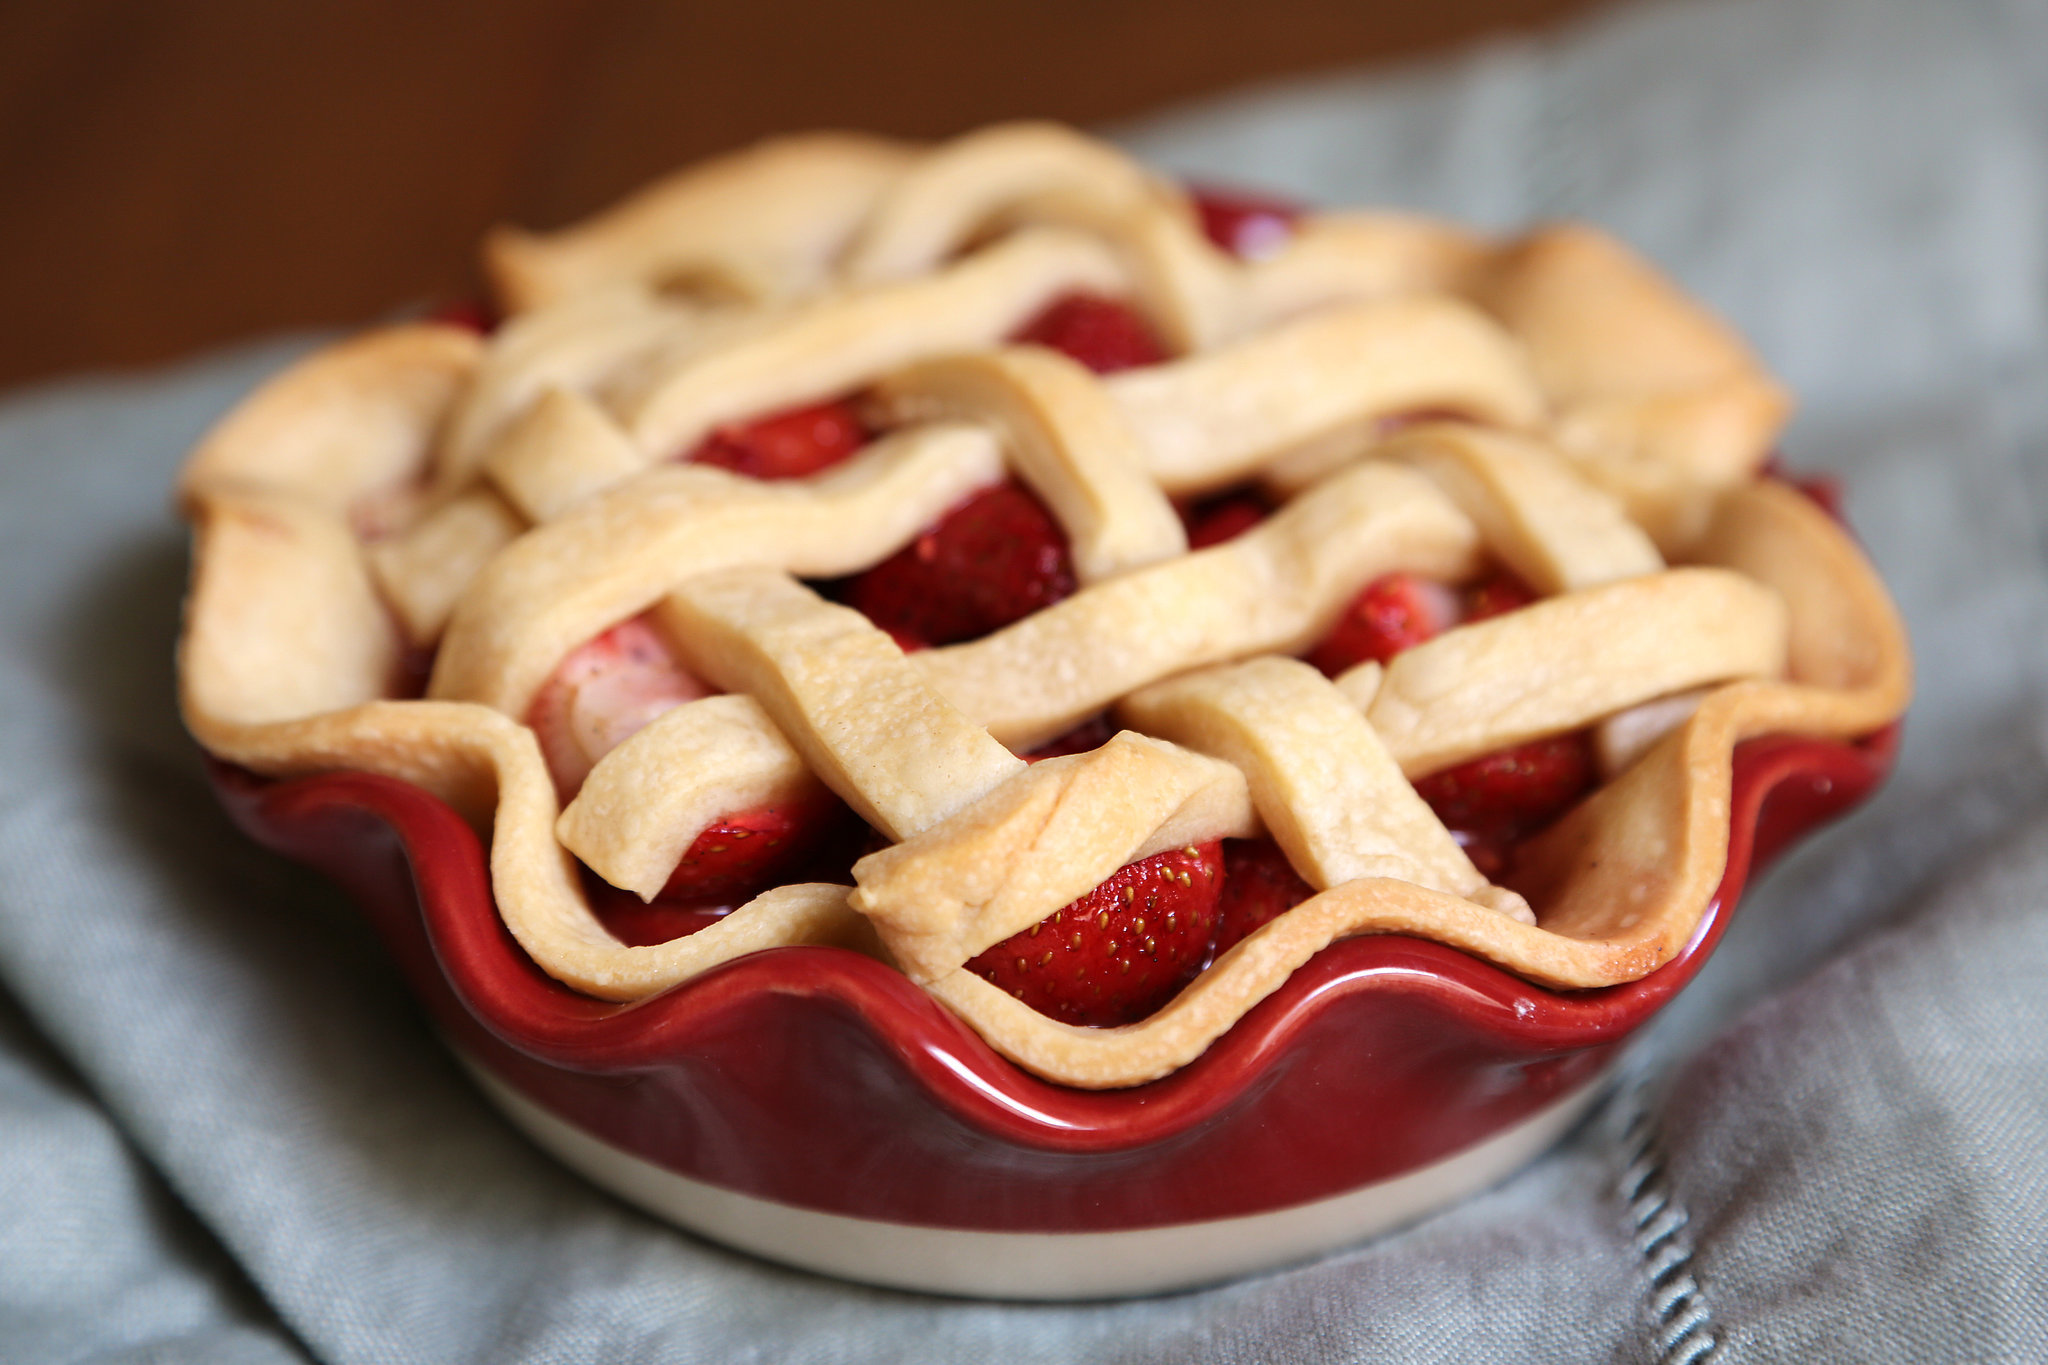 Strawberry Raspberry Pie Recipe Driscoll's, 48% OFF